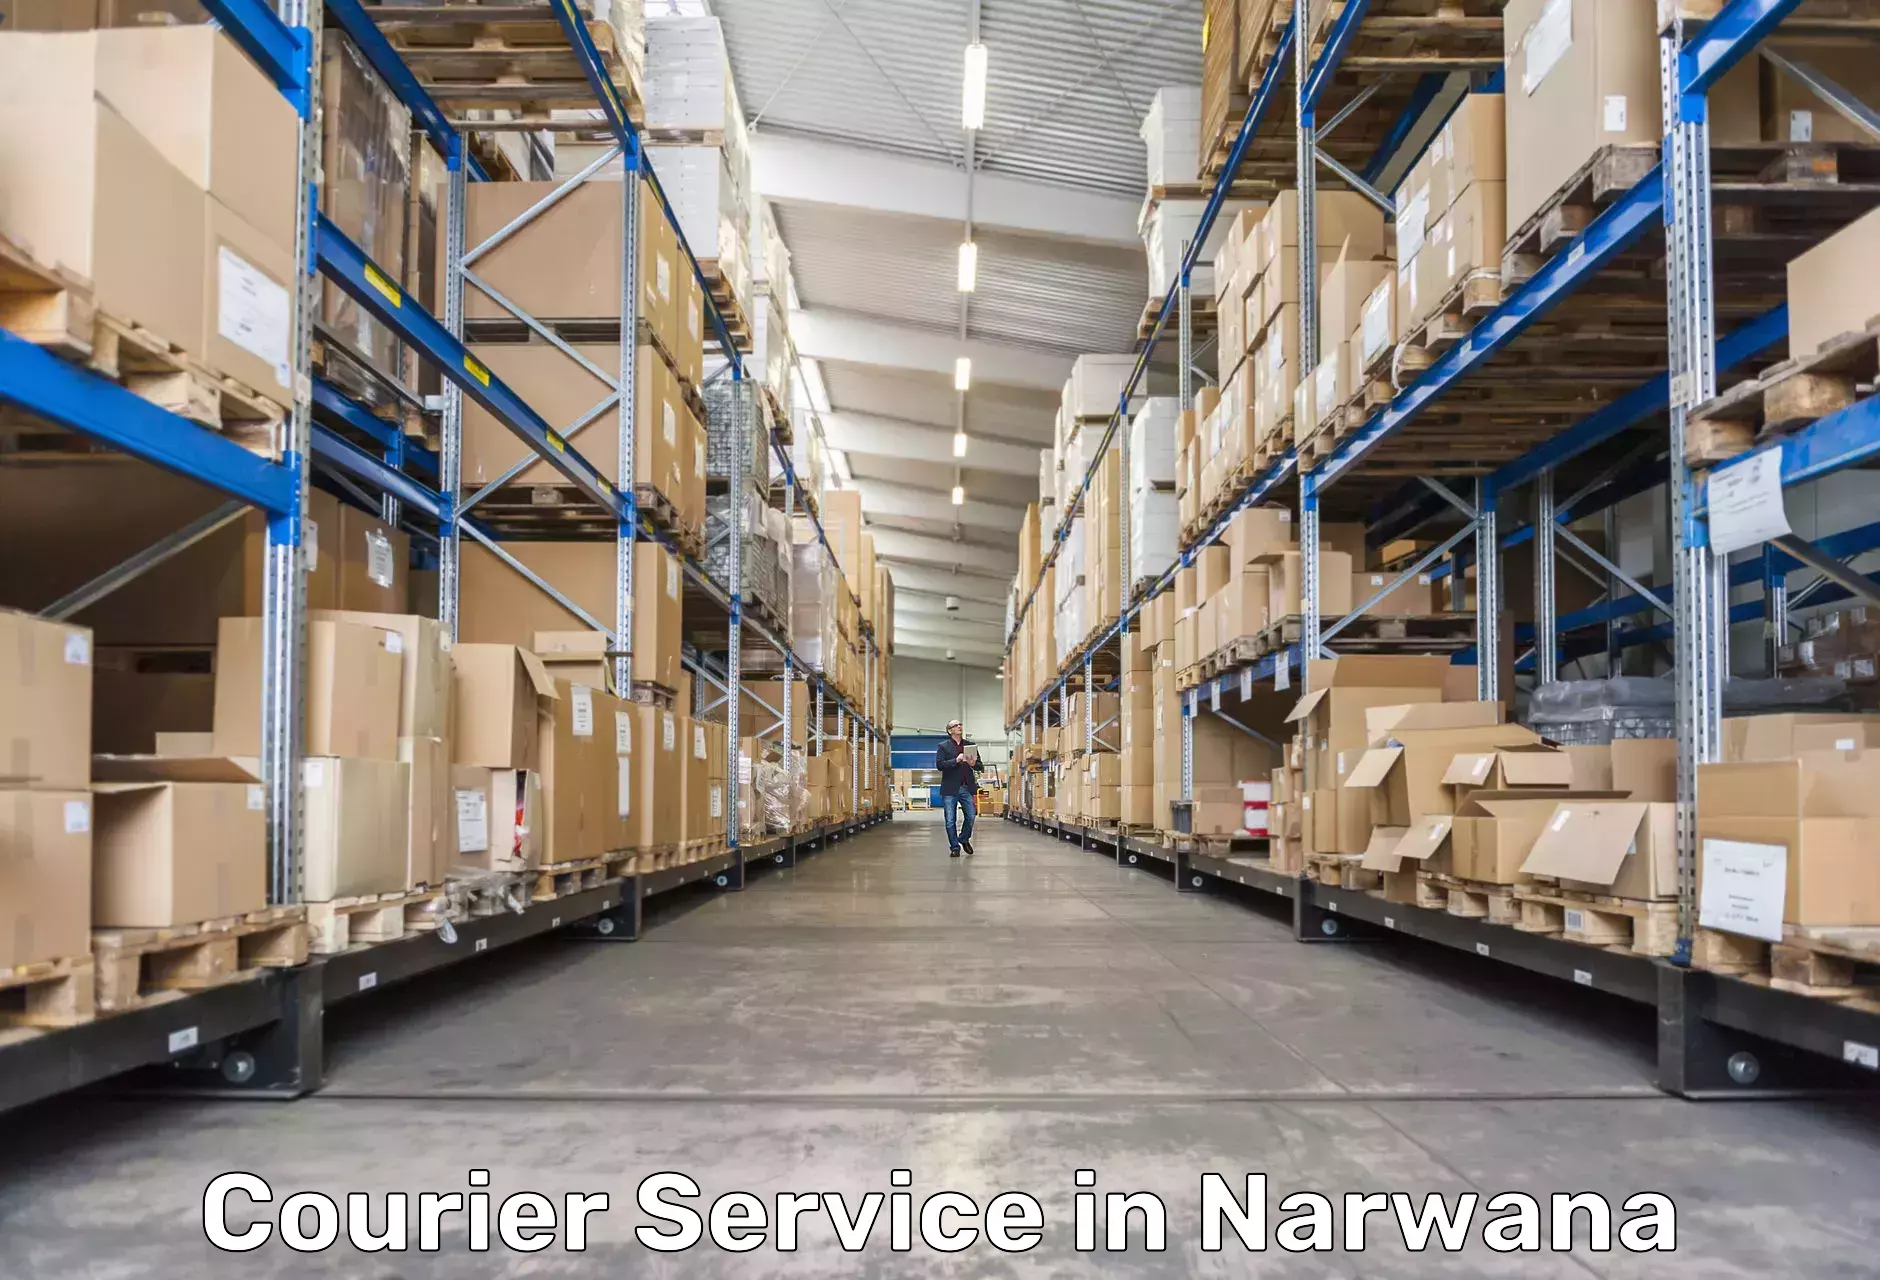 Efficient cargo services in Narwana